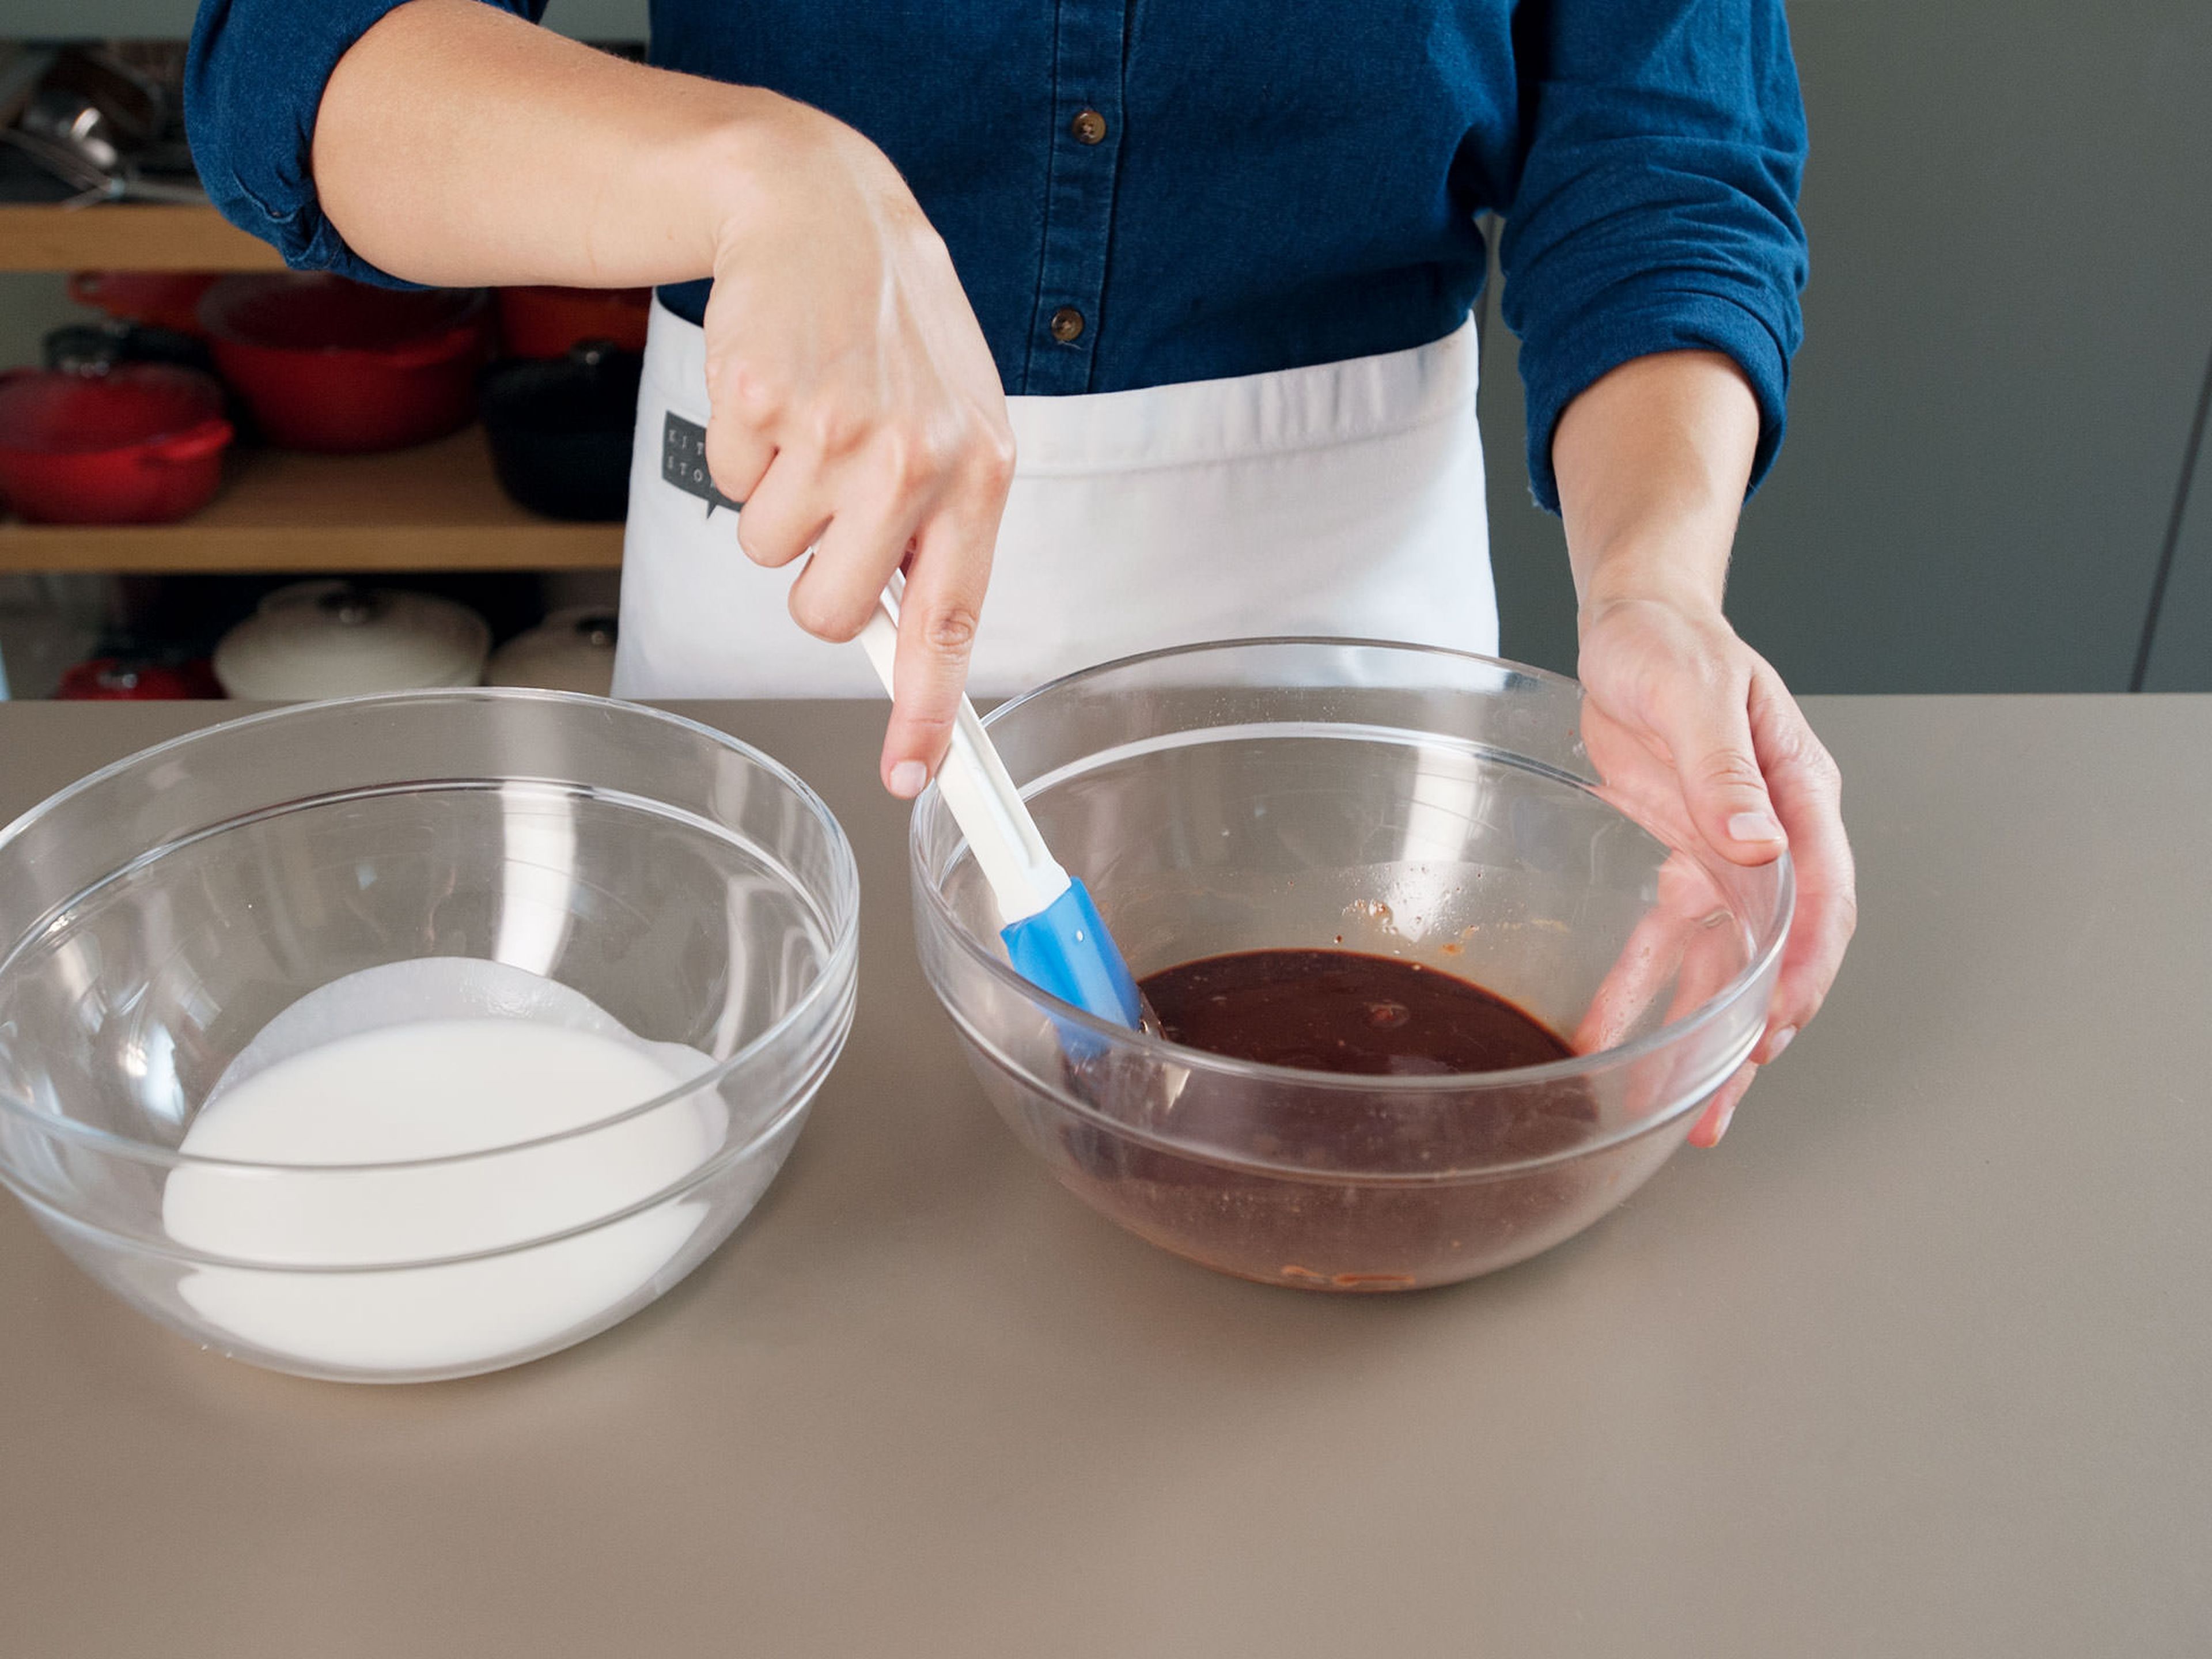 Für den Zuckerguss in einer kleinen Schüssel Puderzucker und löffelweise heißes Wasser miteinander vermischen, bis eine dickflüssige Glasur entsteht. Im Wasserbad Schokolade schmelzen lassen. Vom Herd nehmen. Anschließend, die Hälfte des Zuckerguss in einer sauberen Schüssel mit dem Kakaopulver und der geschmolzenen Schokolade vermengen. Wenn nötig, esslöffelweise heißes Wasser hinzufügen.